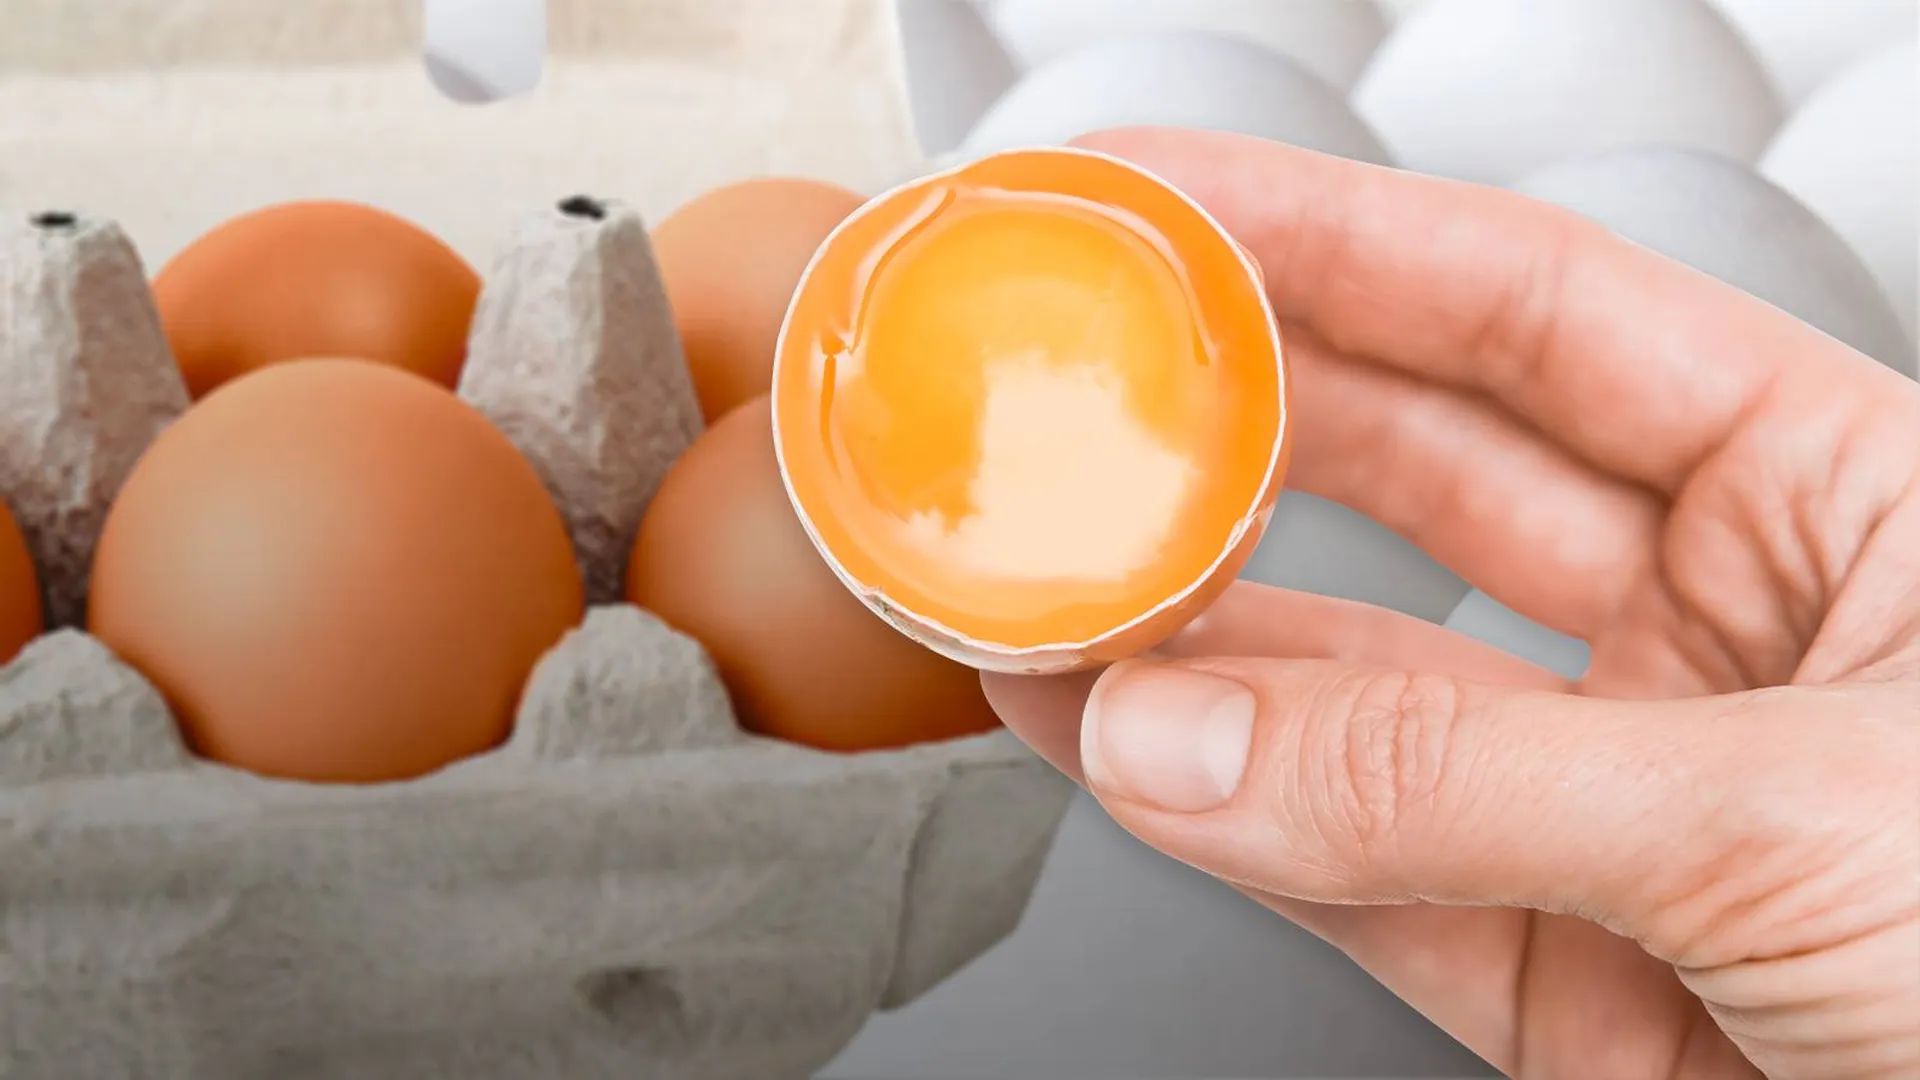 Яйца первой и второй категорий упали в цене. В чем их отличие?